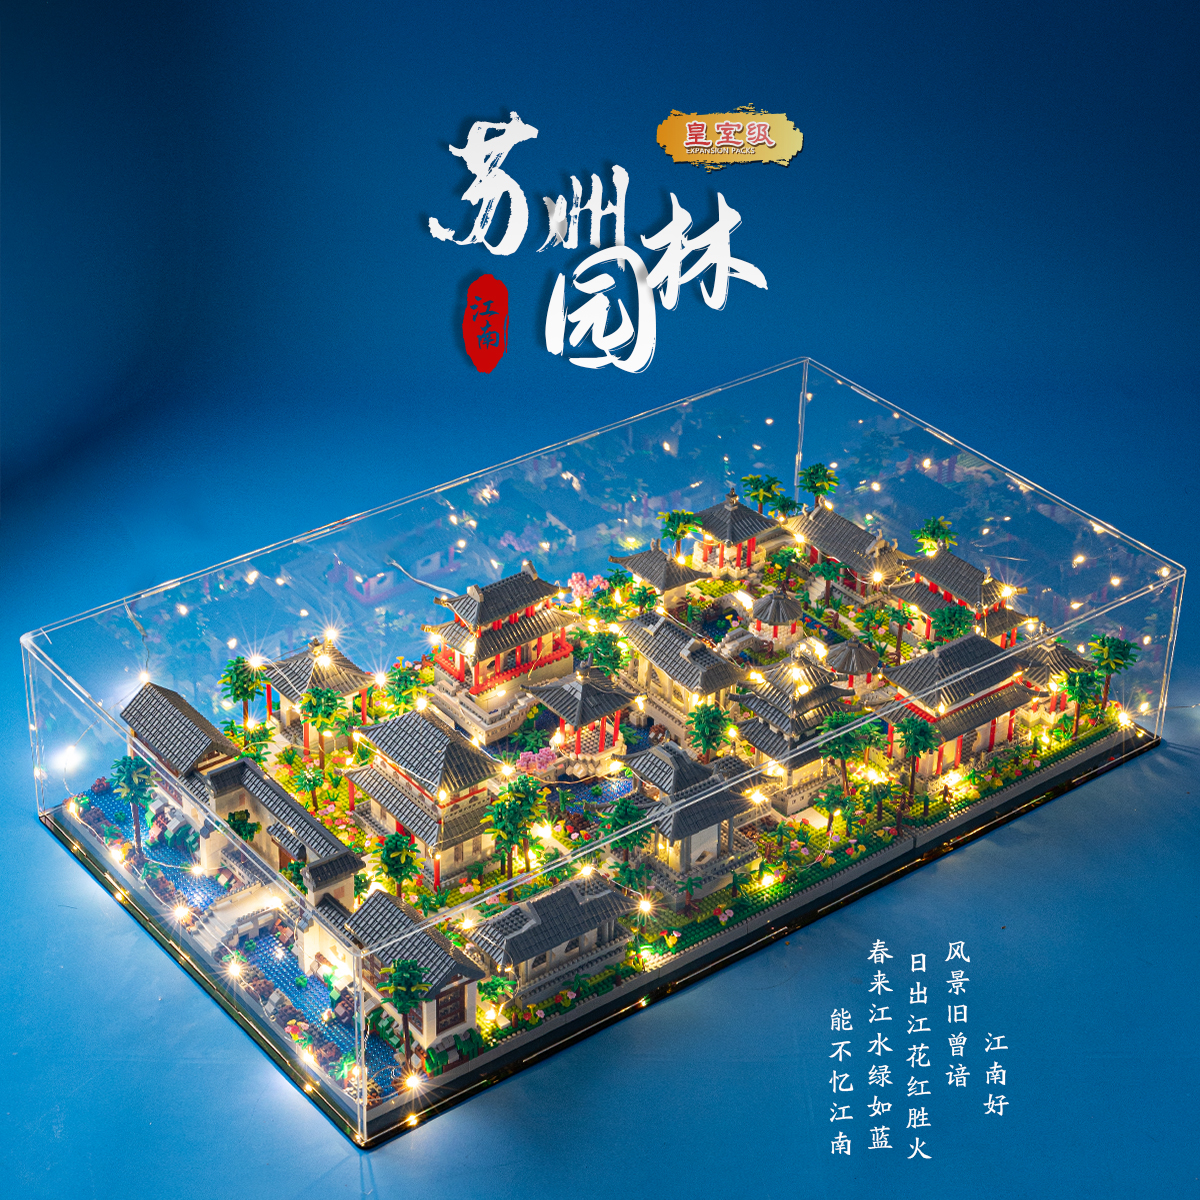 中国积木巨大型建筑苏州园林高难度10000粒以上男孩系列拼装玩具